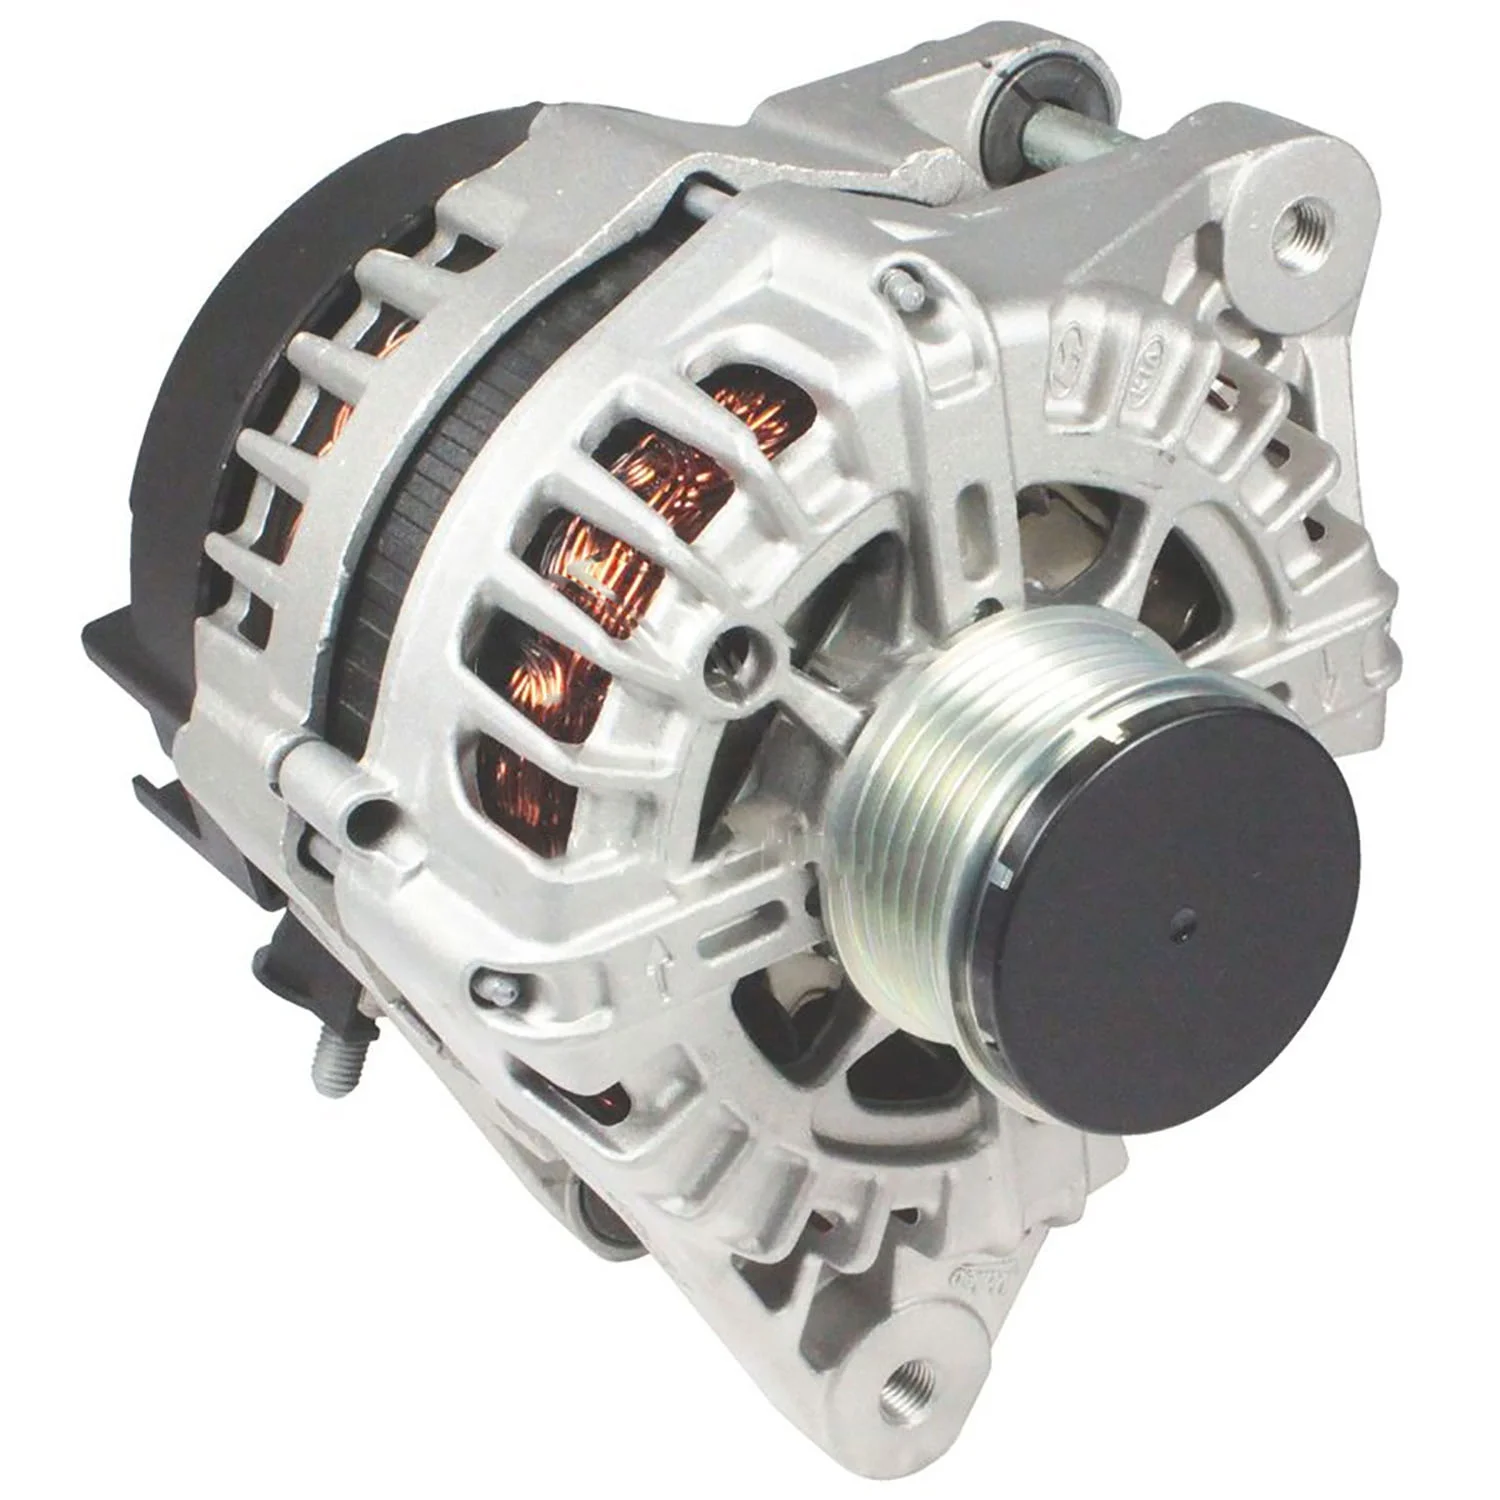 

Auto Dynamo Alternator Generator For HD VLEO 373002F350 ALV3787BS ALV3787KR 2617532N FG15S108